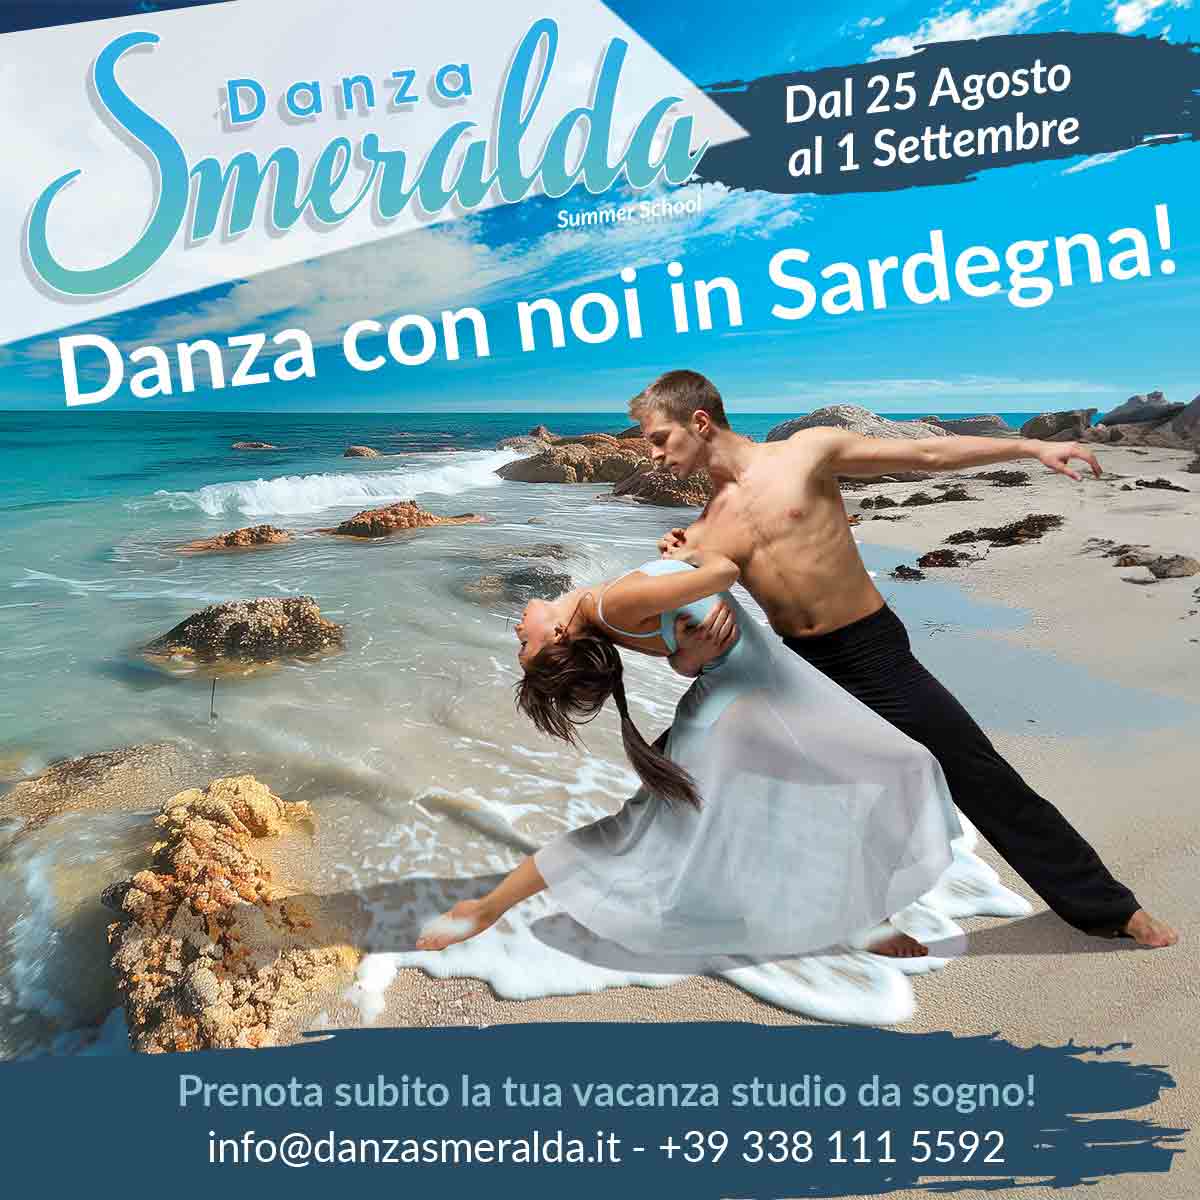 Danza Smeralda Summer School